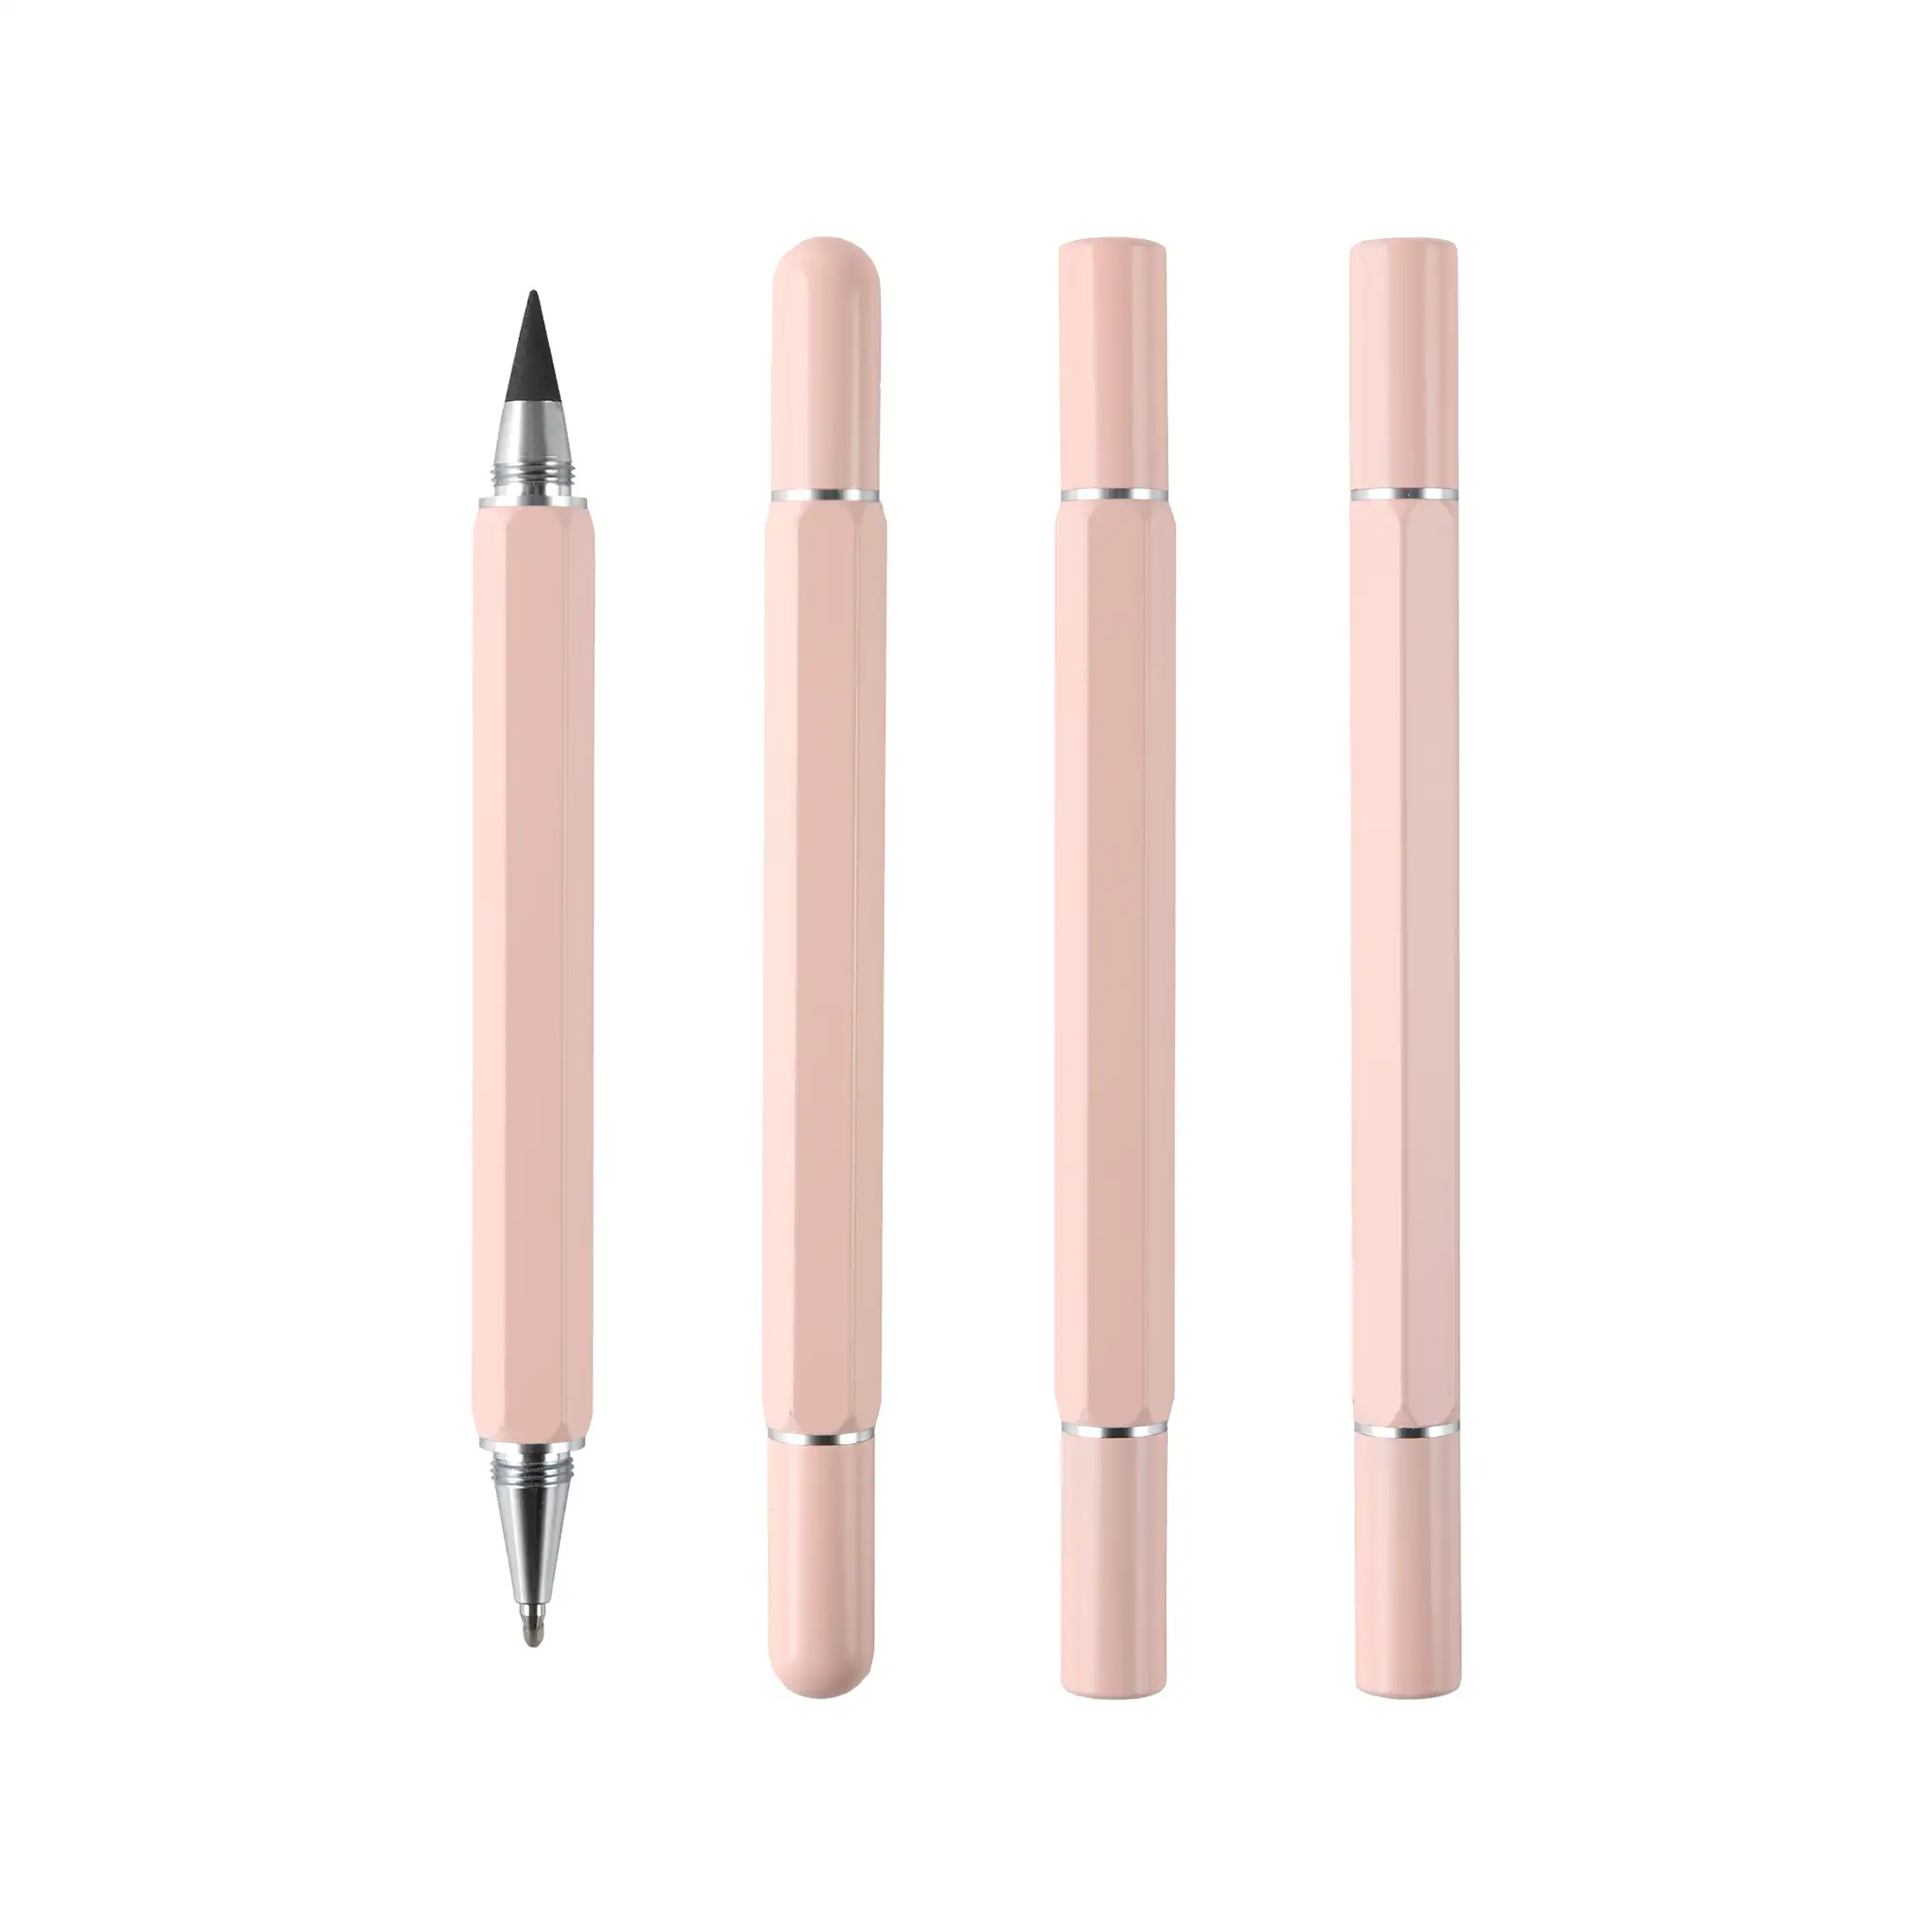 TTX ปากกาเจลโลหะหกเหลี่ยมสีชมพู,ปากกาสองหัวปากกาโฆษณาของขวัญส่งเสริมการขายส่วนบุคคลพร้อมโลโก้